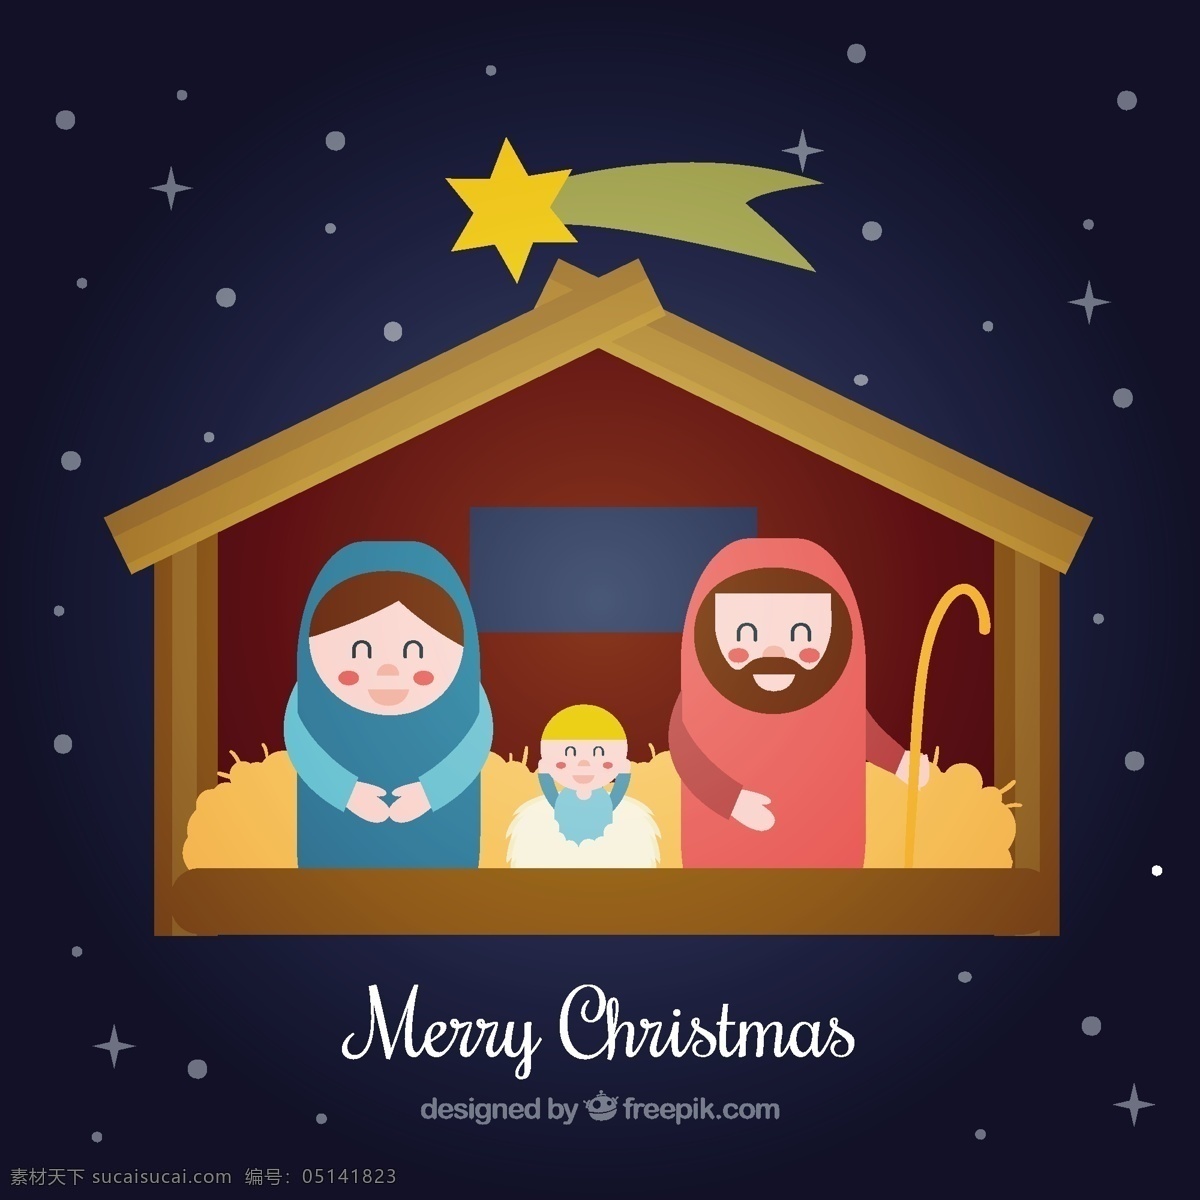 可爱 基督 诞生 场景 平面设计 圣诞节 圣诞快乐 冬天快乐 平 耶稣 庆祝节日 节日快乐 圣诞 上帝 基督徒 可爱的场景 季节 节日 黑色